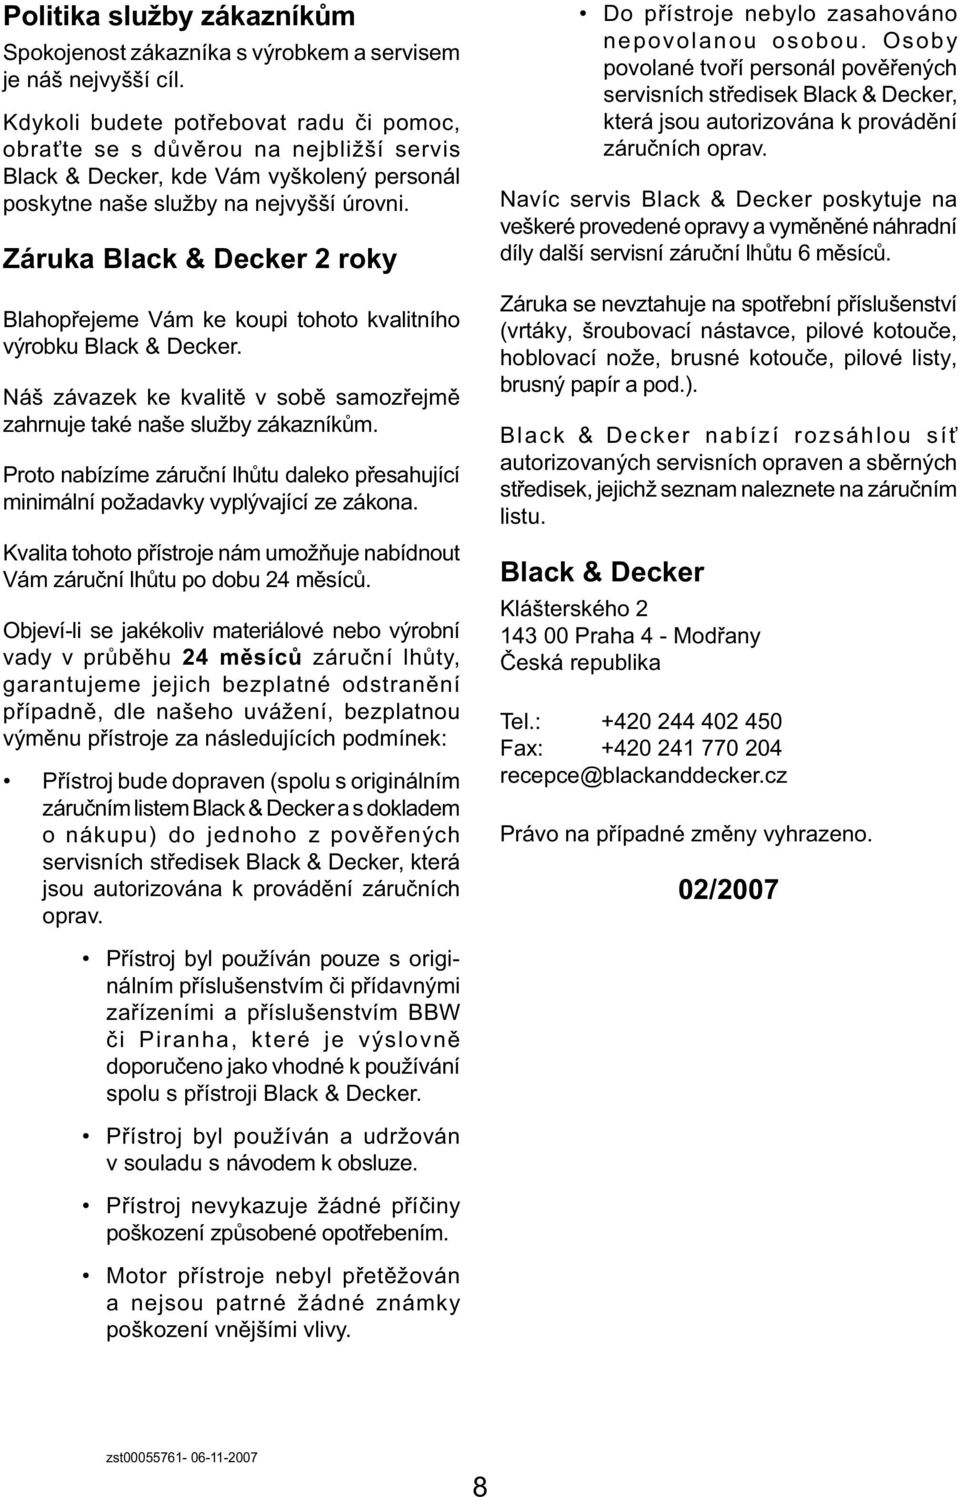 Záruka Black & Decker 2 roky Blahopřejeme Vám ke koupi tohoto kvalitního výrobku Black & Decker. Náš závazek ke kvalitě v sobě samozřejmě zahrnuje také naše služby zákazníkům.